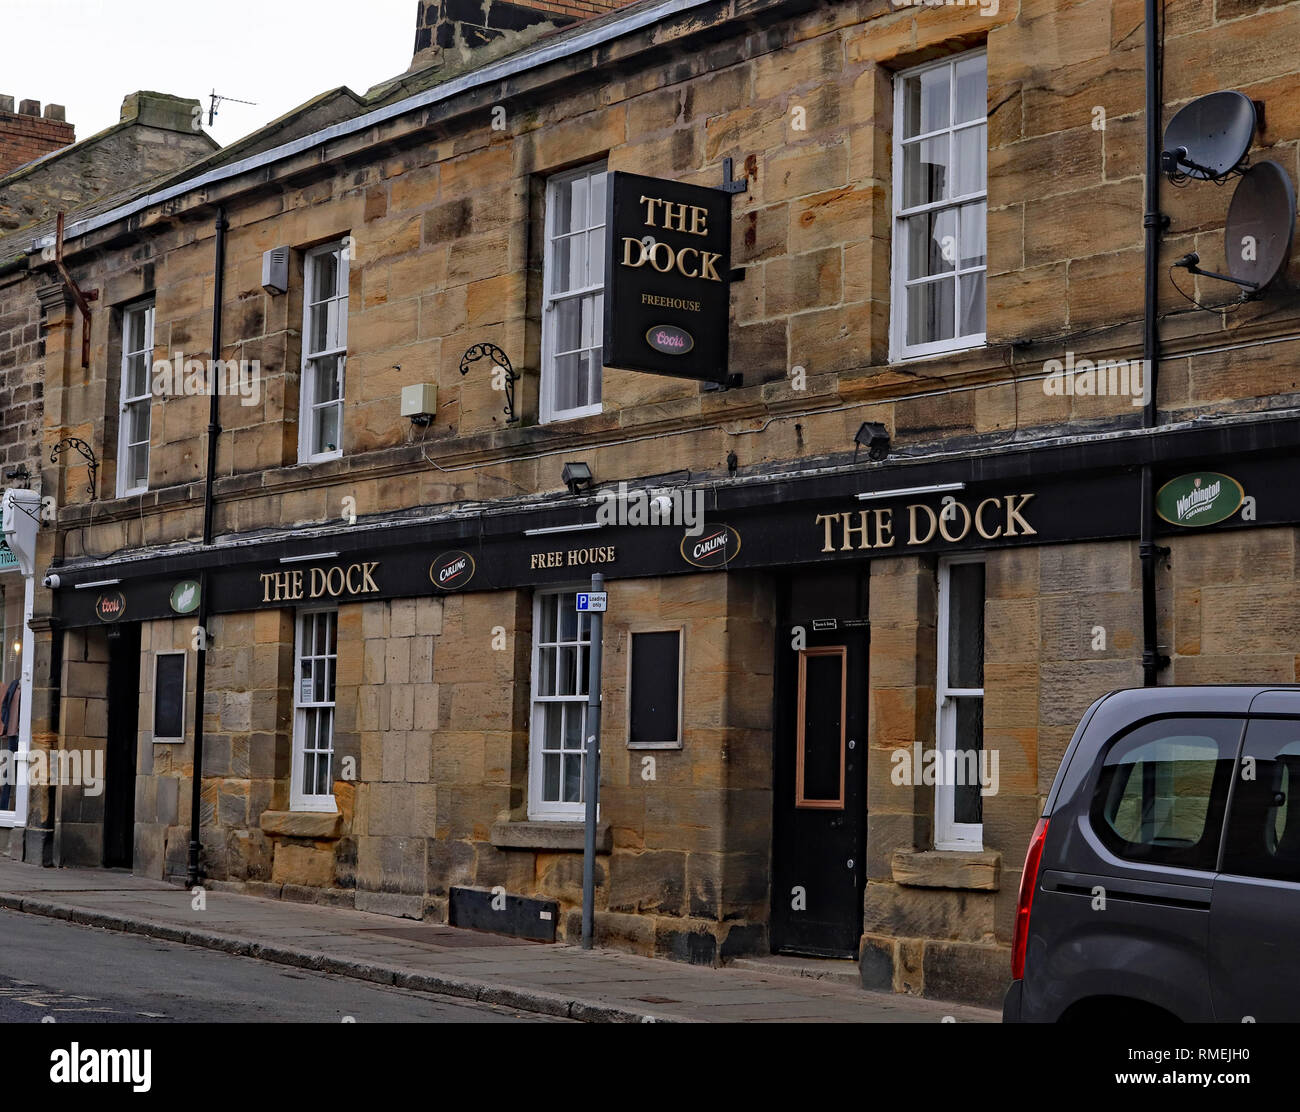 Das Dock pub Schlendern Schlendern ist eine kleine Stadt an der nordöstlichen Küste von Northumberland in Nordost-england. Einer der lokalen Pubs in der Stadt Cw 6609 Stockfoto